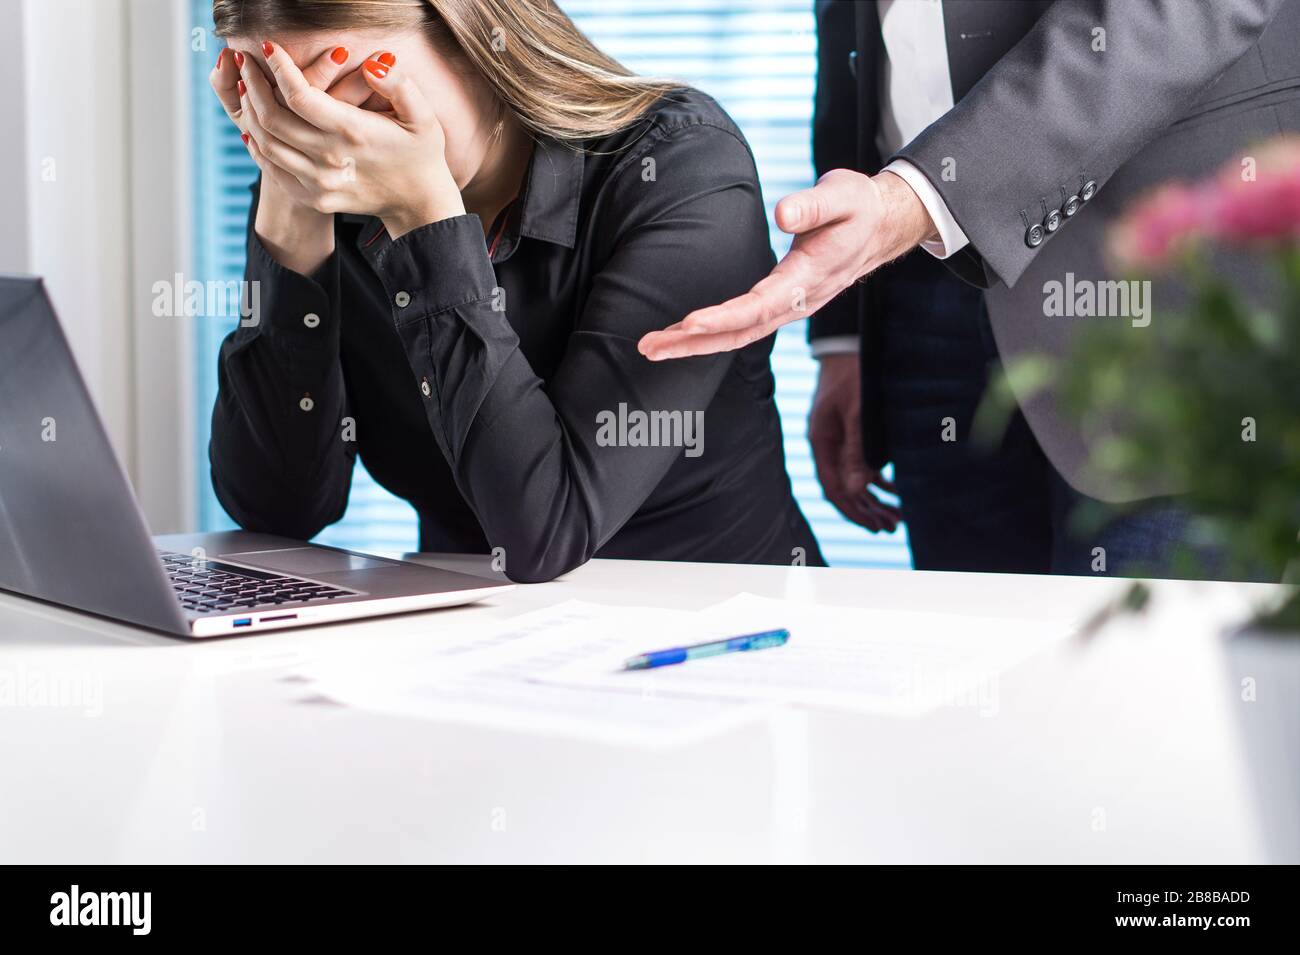 Donna sconvolto piangendo in ufficio. Ottenere sparato dal lavoro. Uomo d'affari o capo che si scusa, consolante o assistente di supporto. Foto Stock